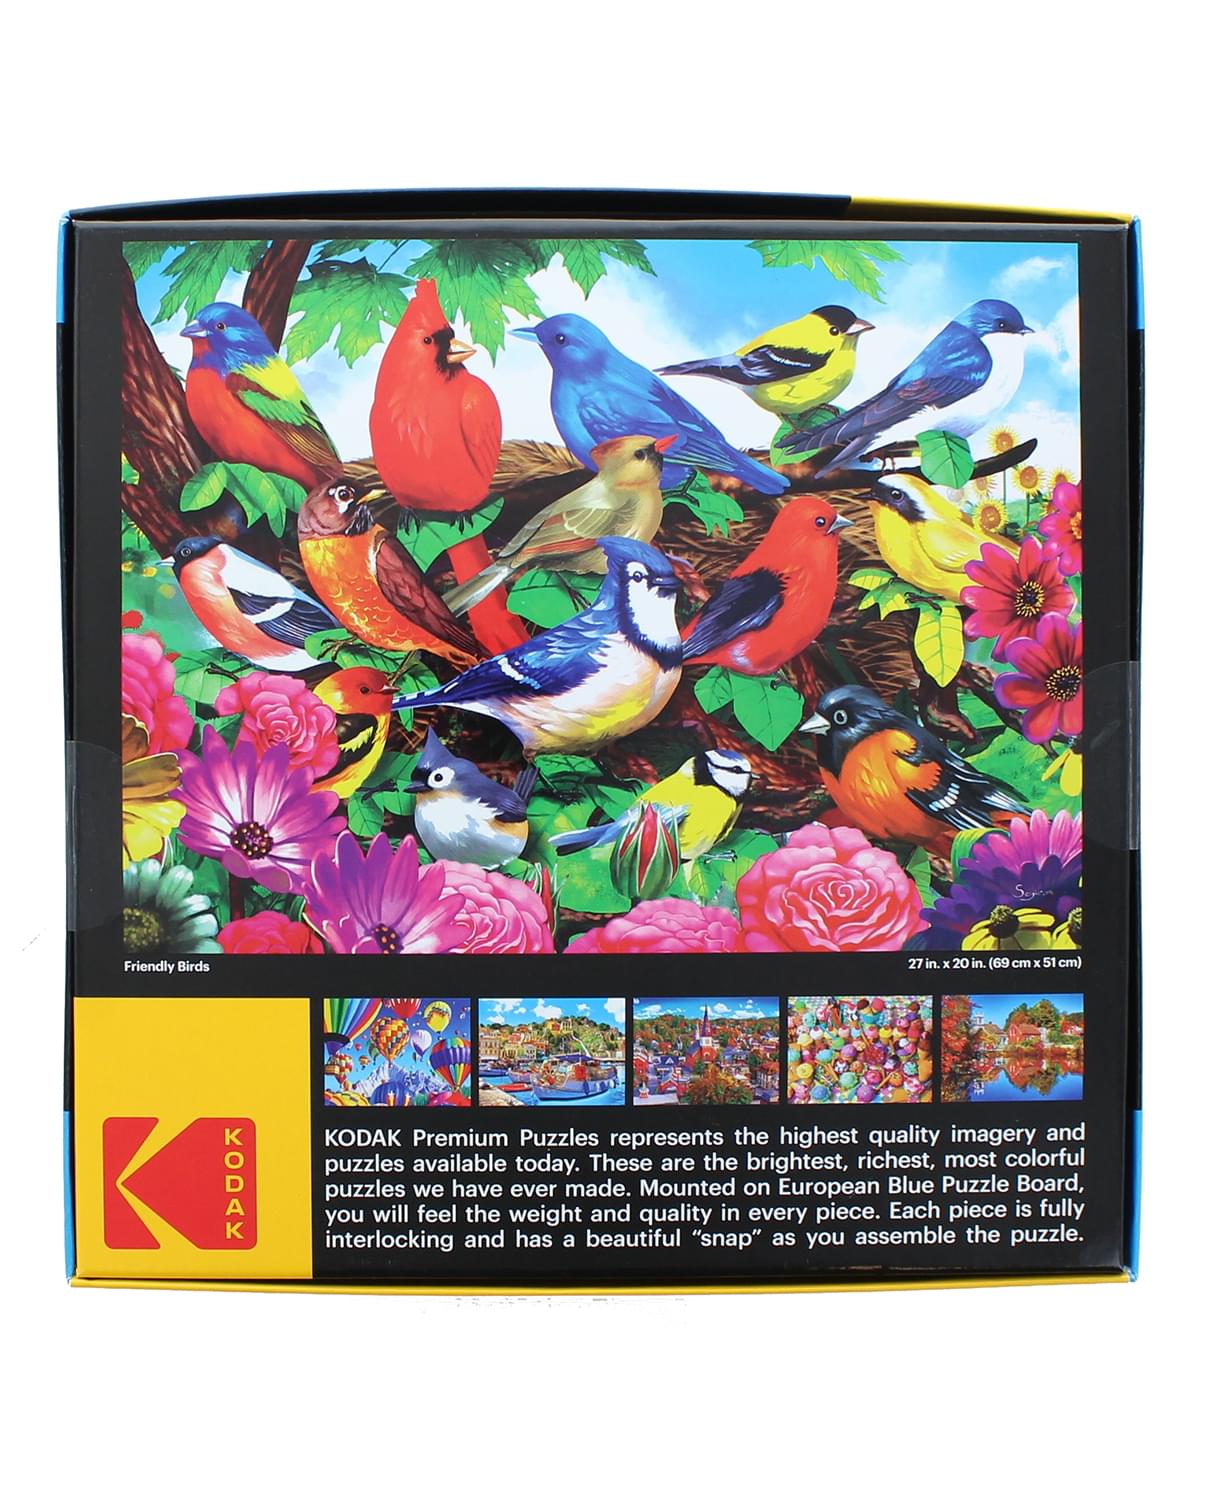 Friendly Birds 1000 Piece Jigsaw Puzzle